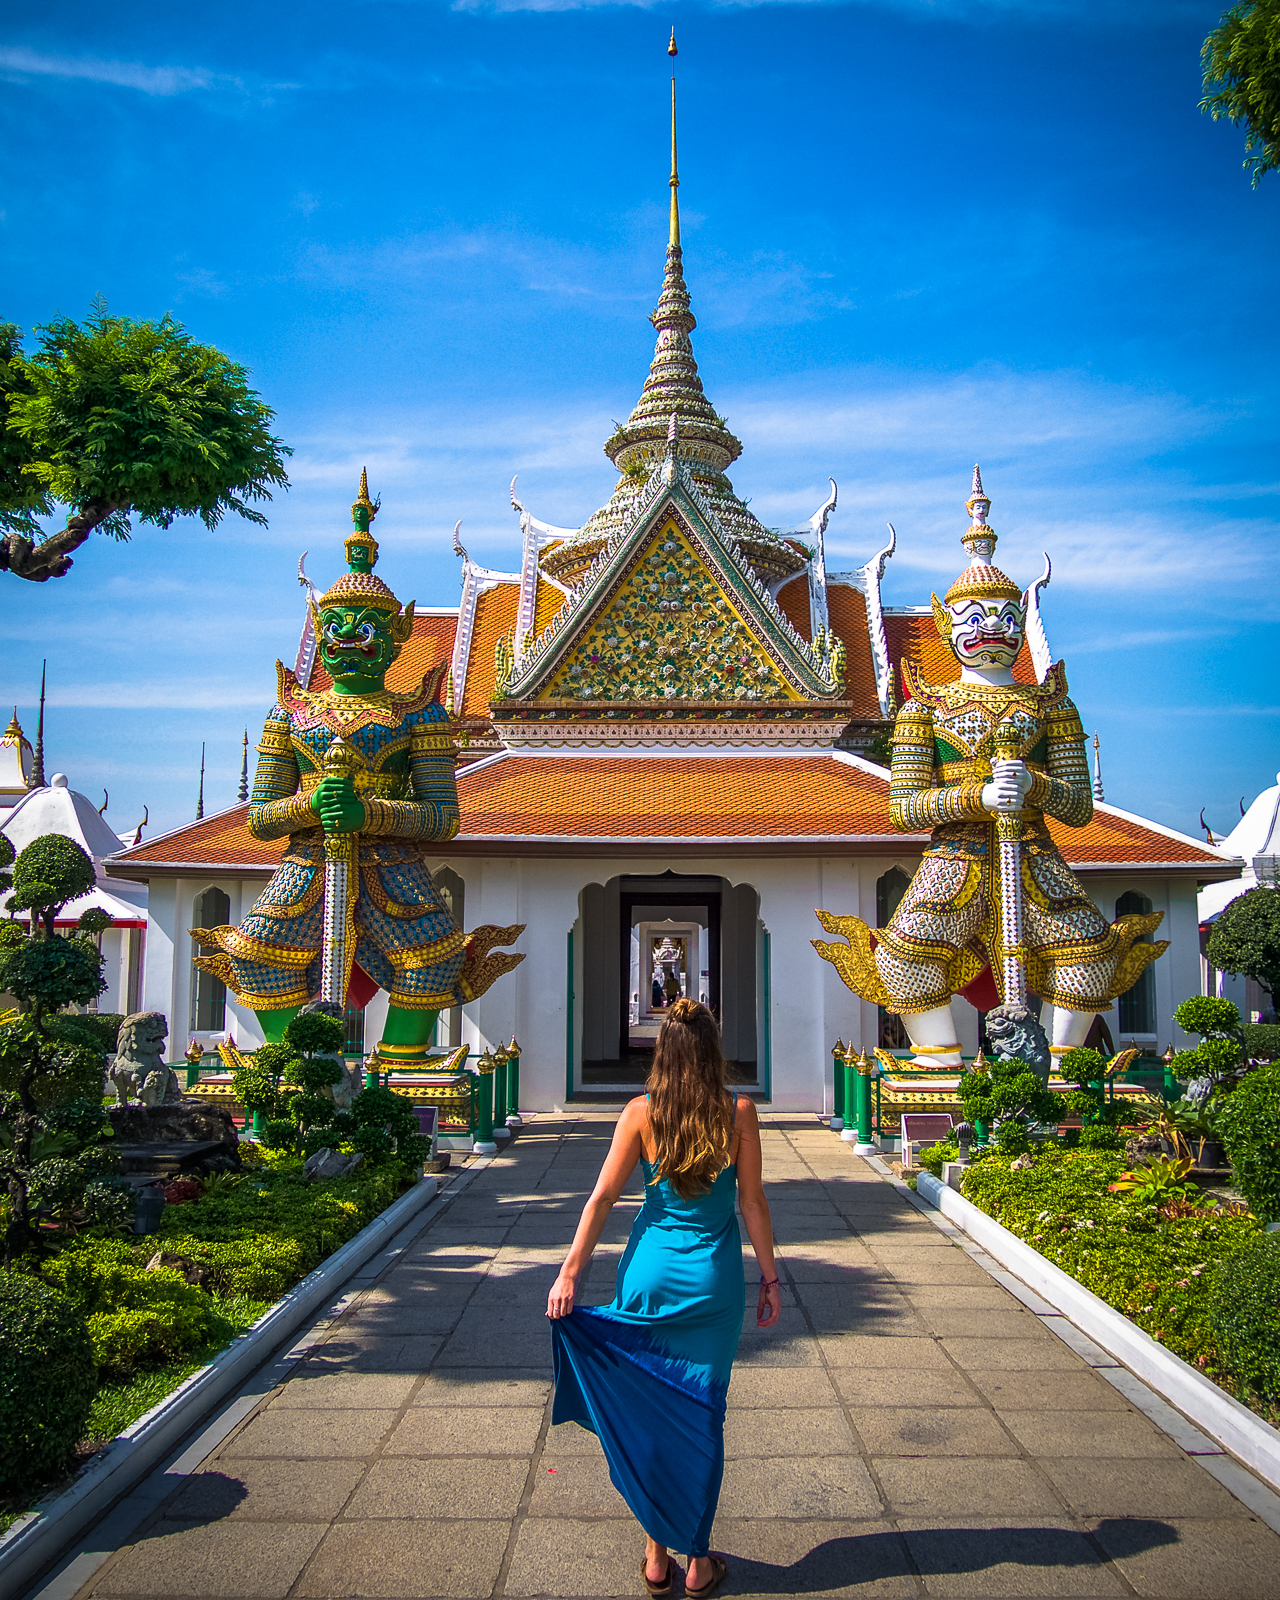 Outside of Wat Arun